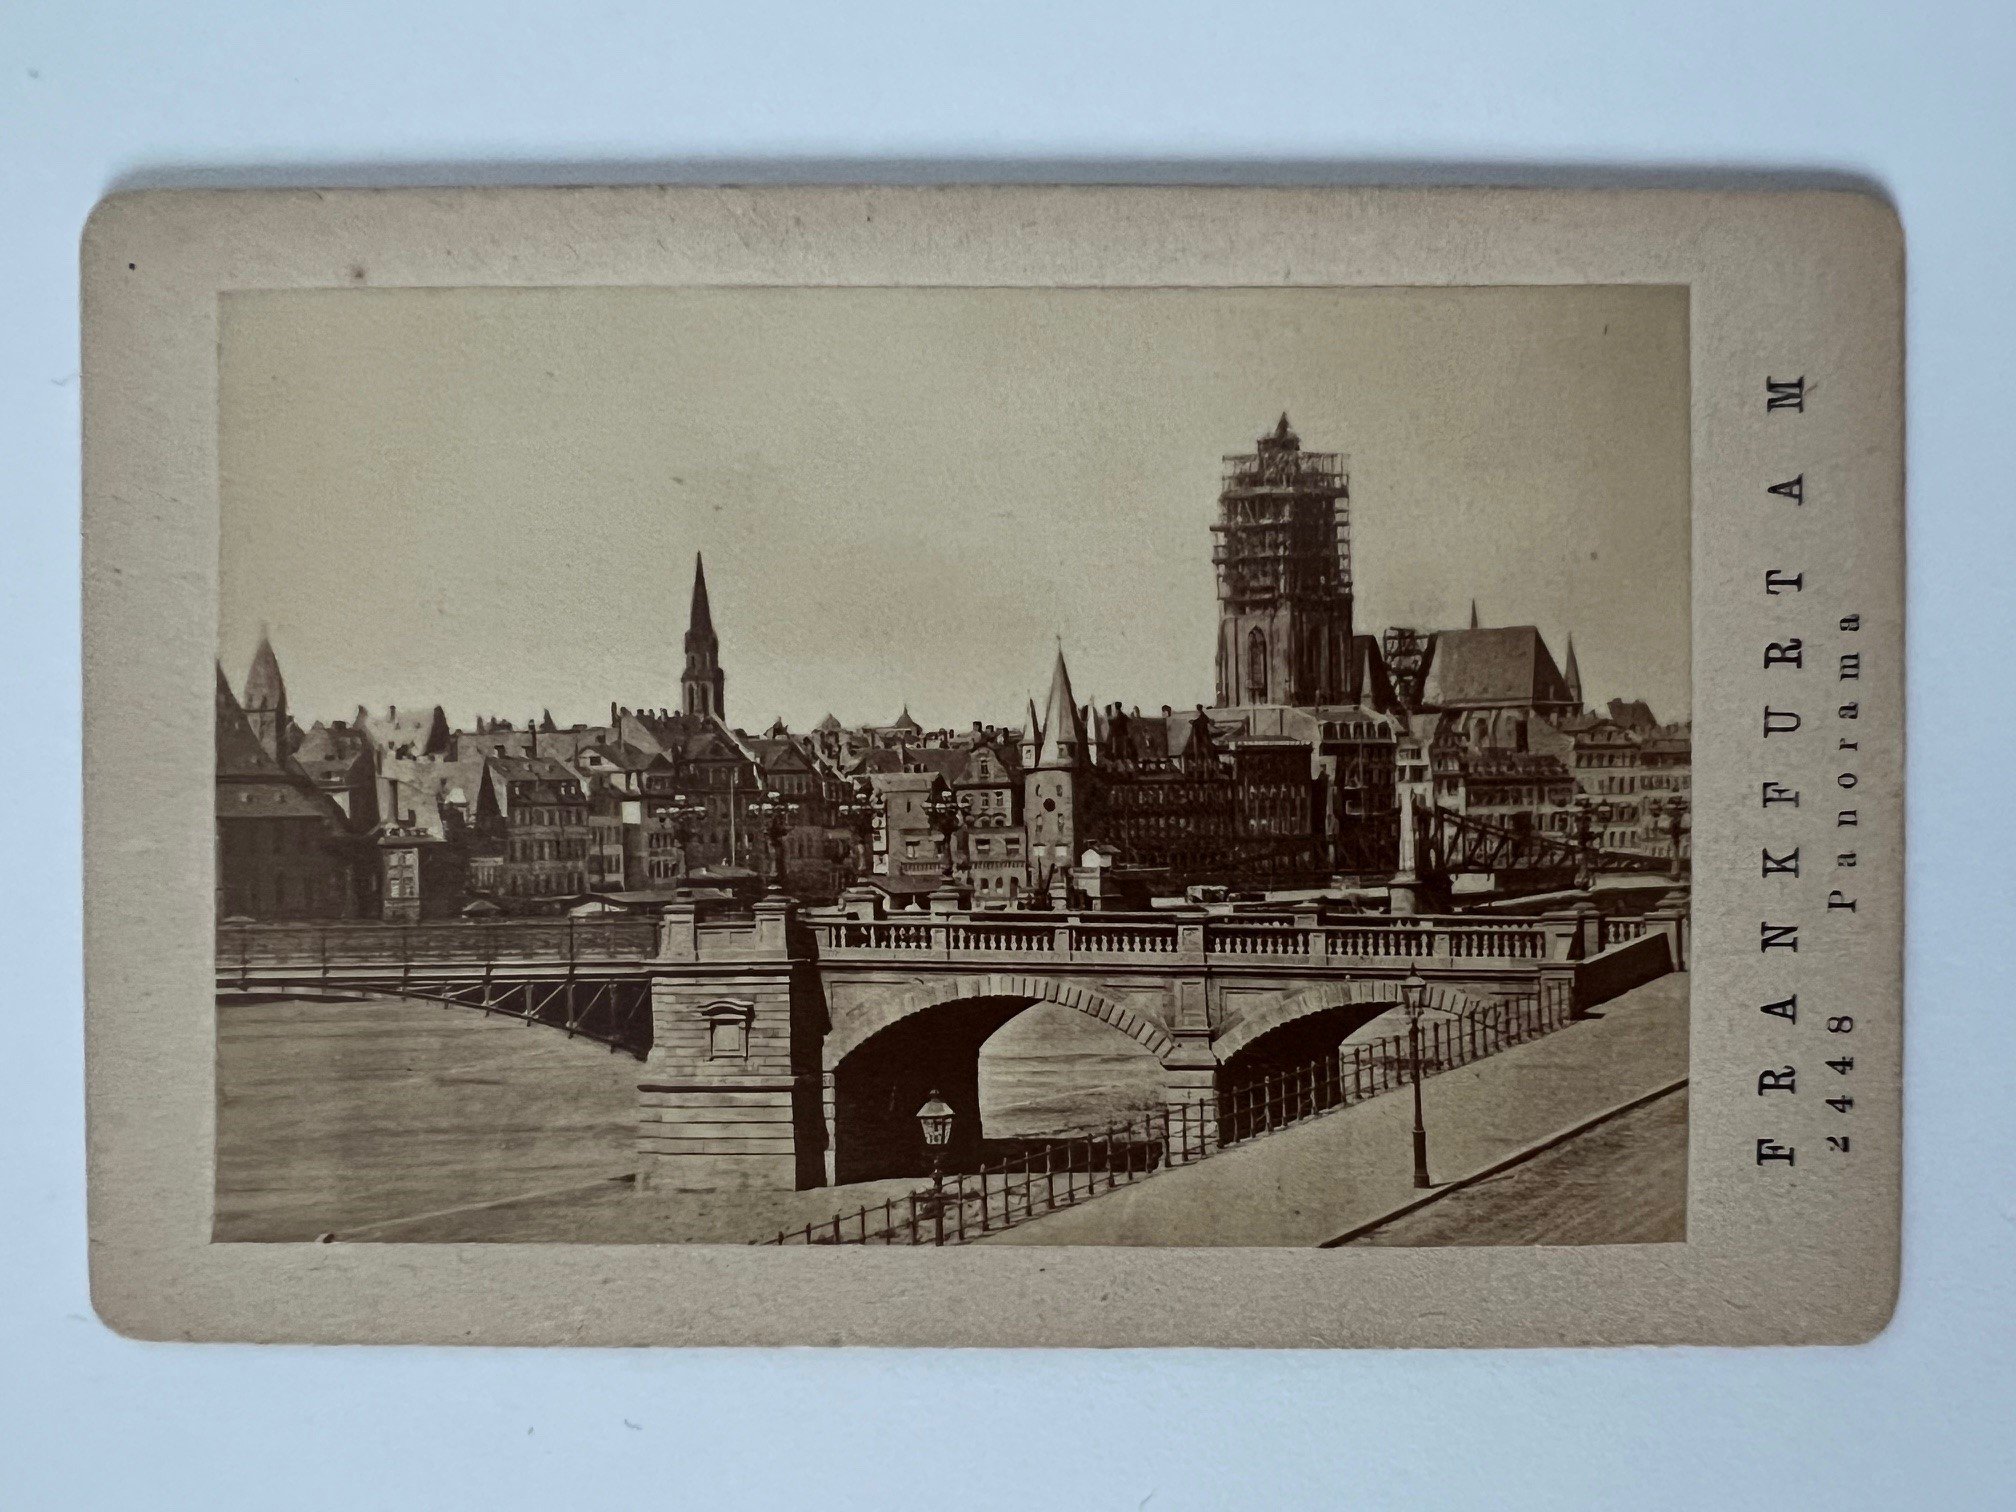 CdV, Unbekannter Fotograf, Frankfurt, Panorama, ca. 1876. (Taunus-Rhein-Main - Regionalgeschichtliche Sammlung Dr. Stefan Naas CC BY-NC-SA)